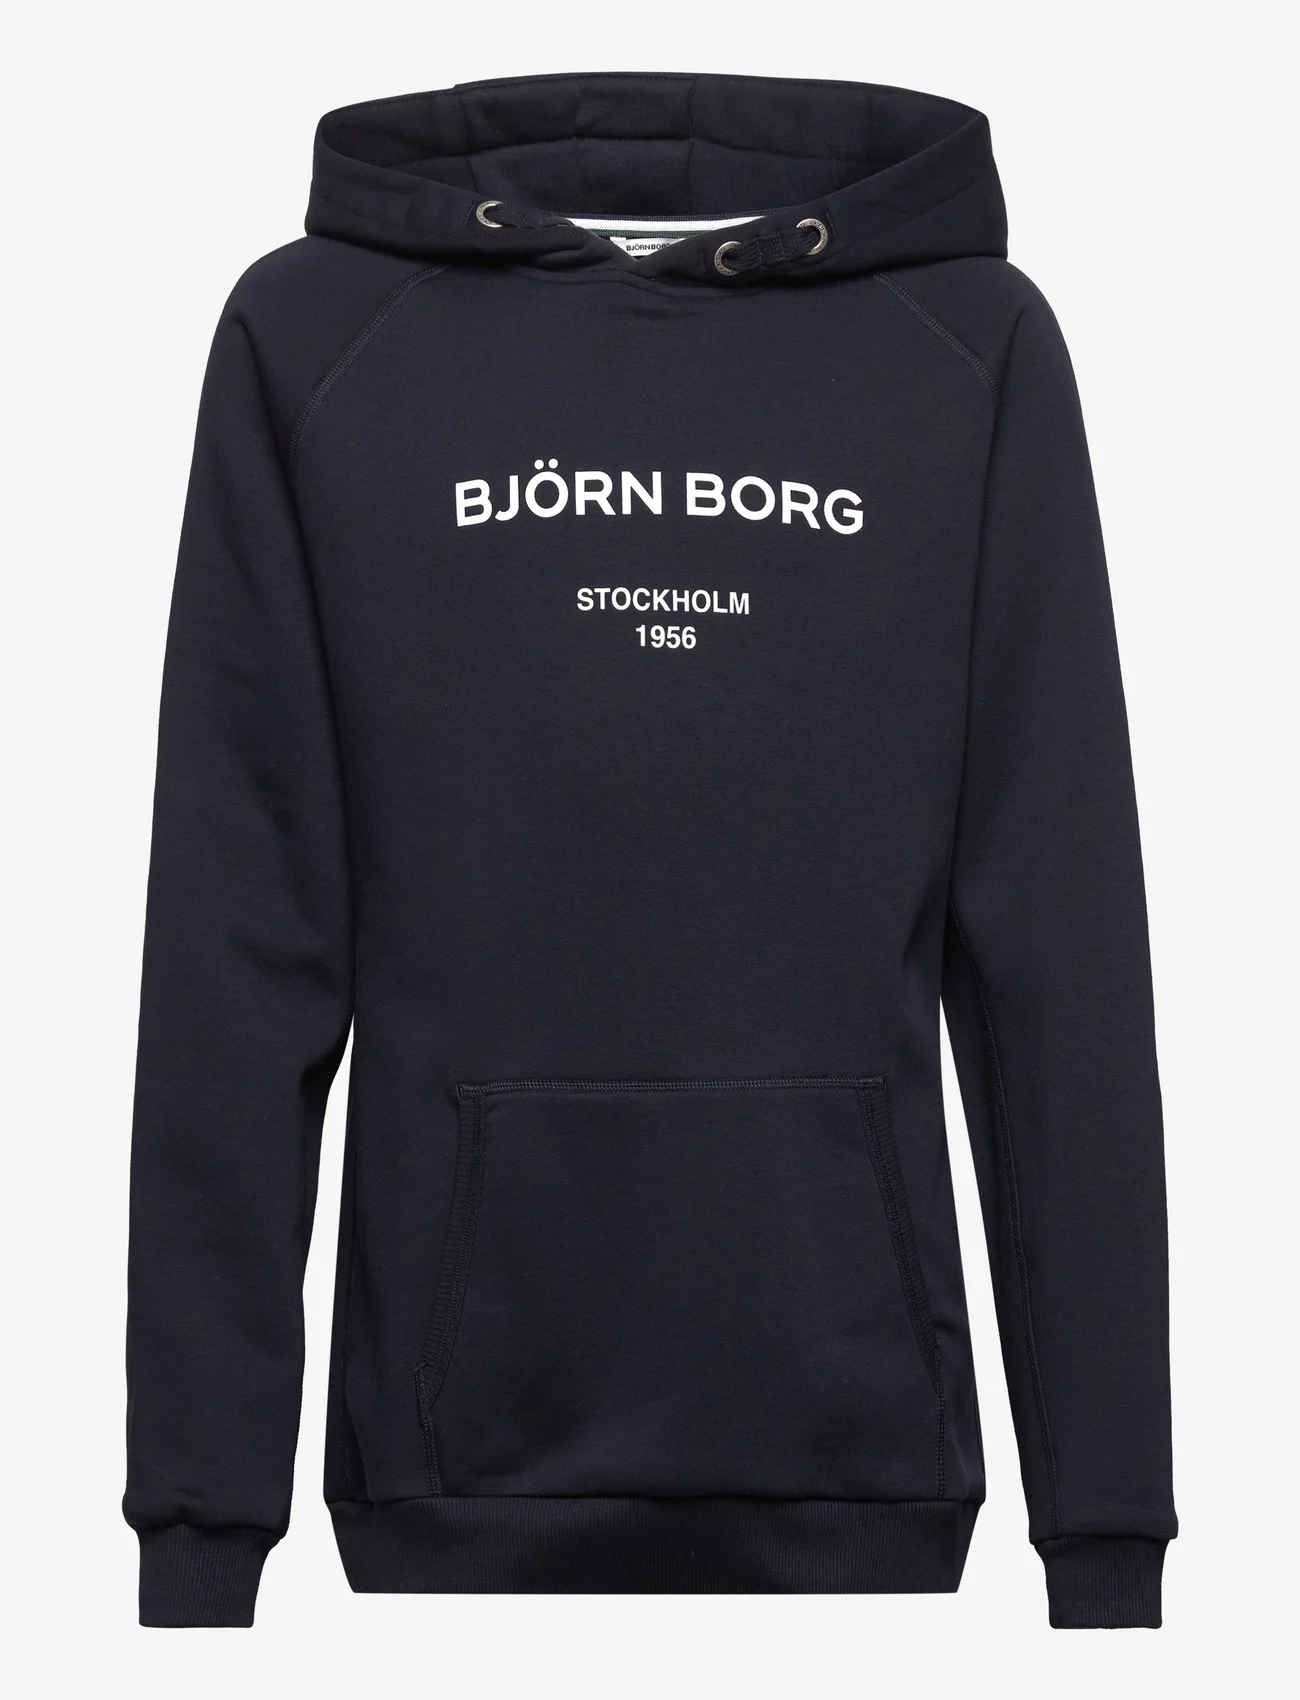 Björn Borg - BORG HOODIE - hettegensere - night sky - 0